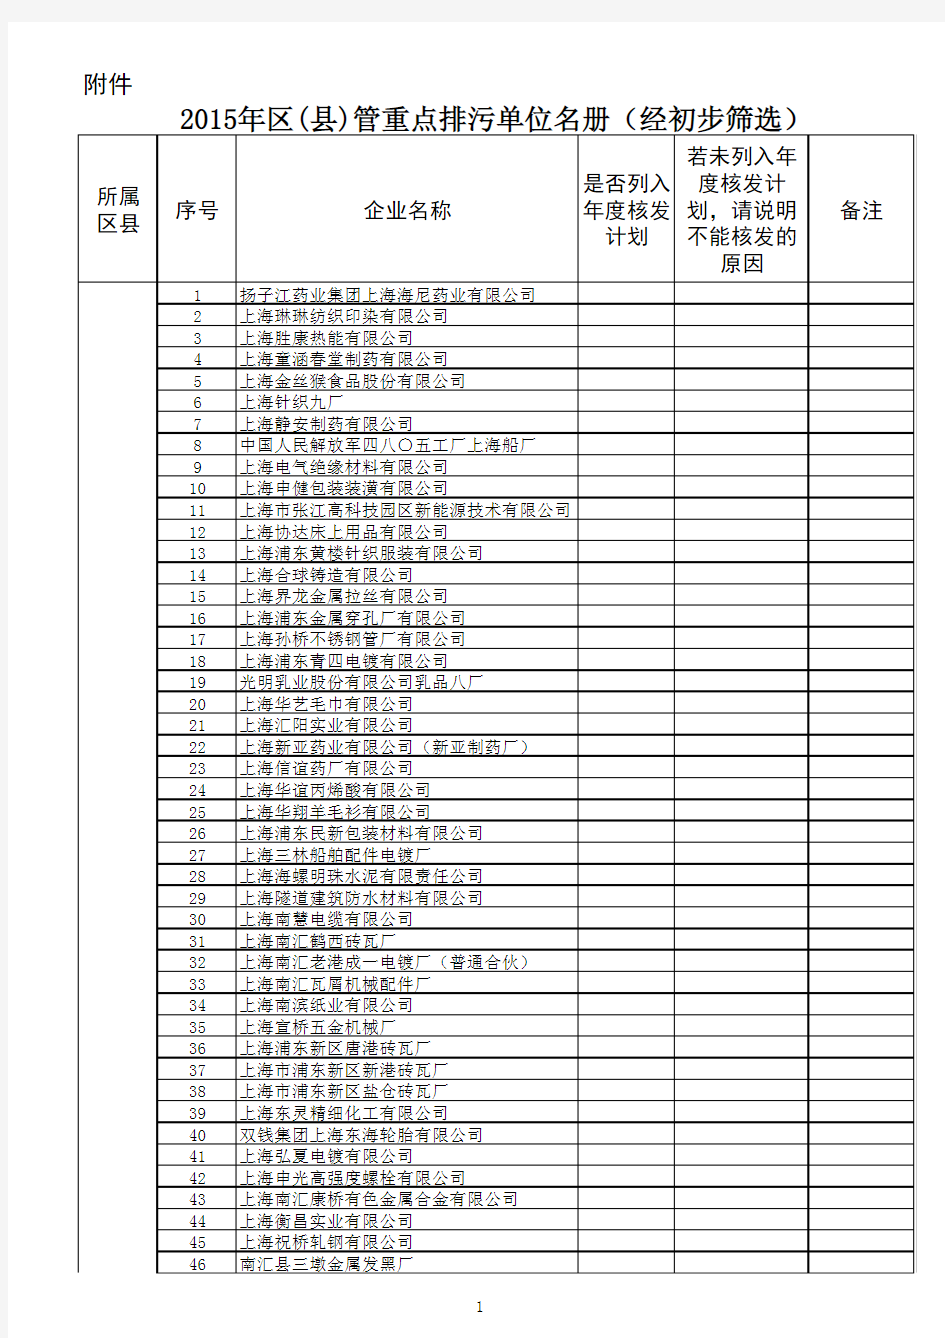 上海市2015年区县重点监管排污单位名册